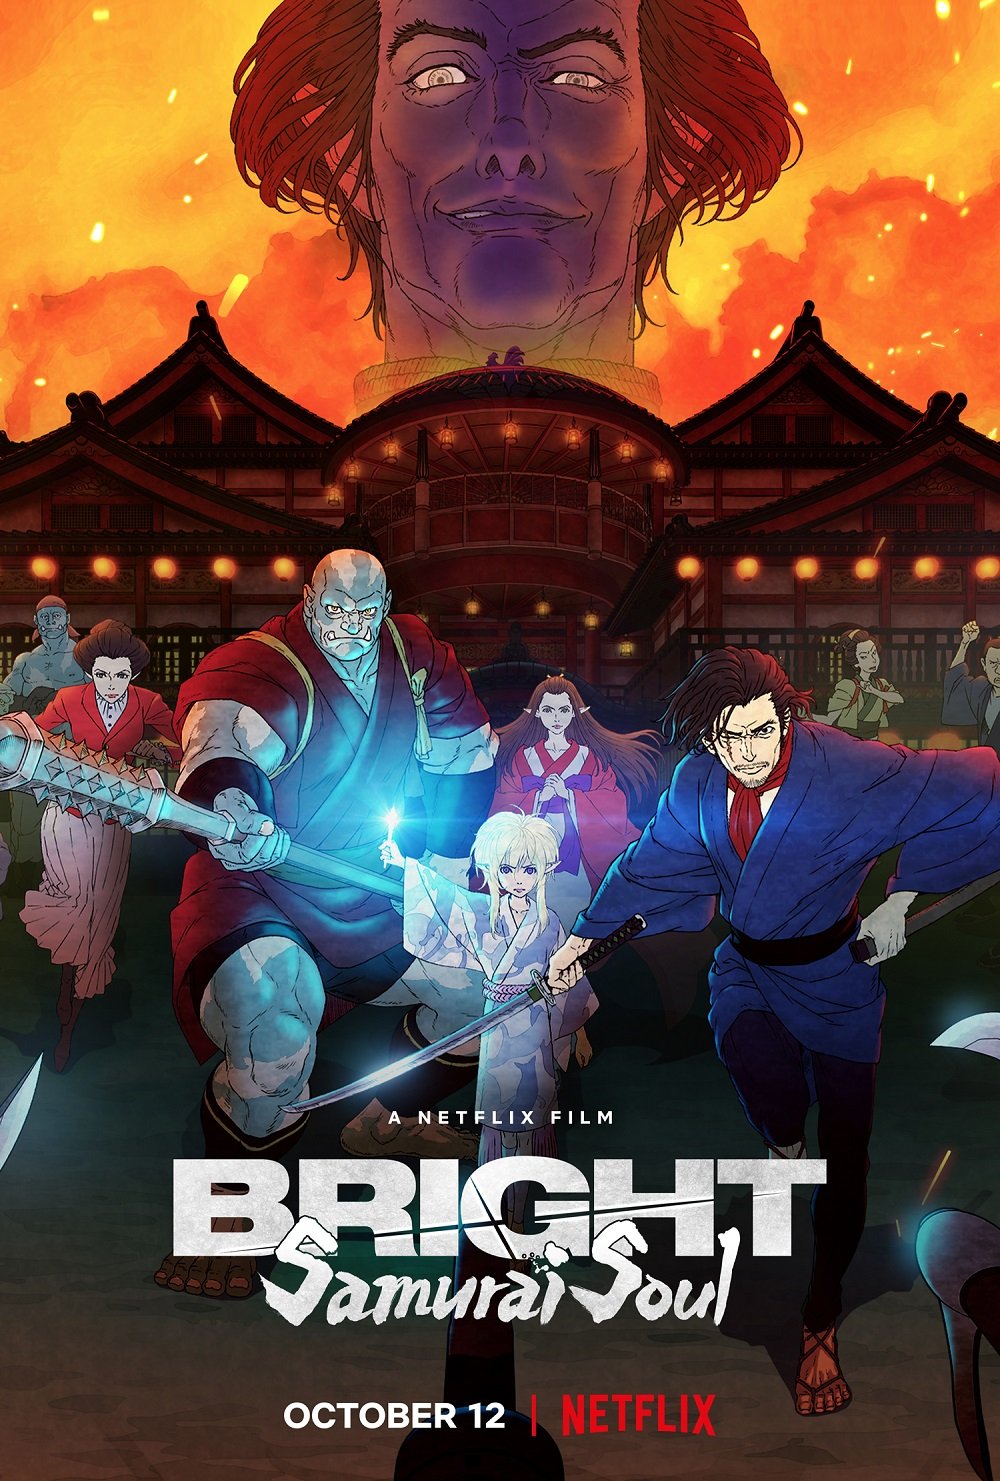 Simu Liu's new film "Bright: Samurai Soul" revealed trailer